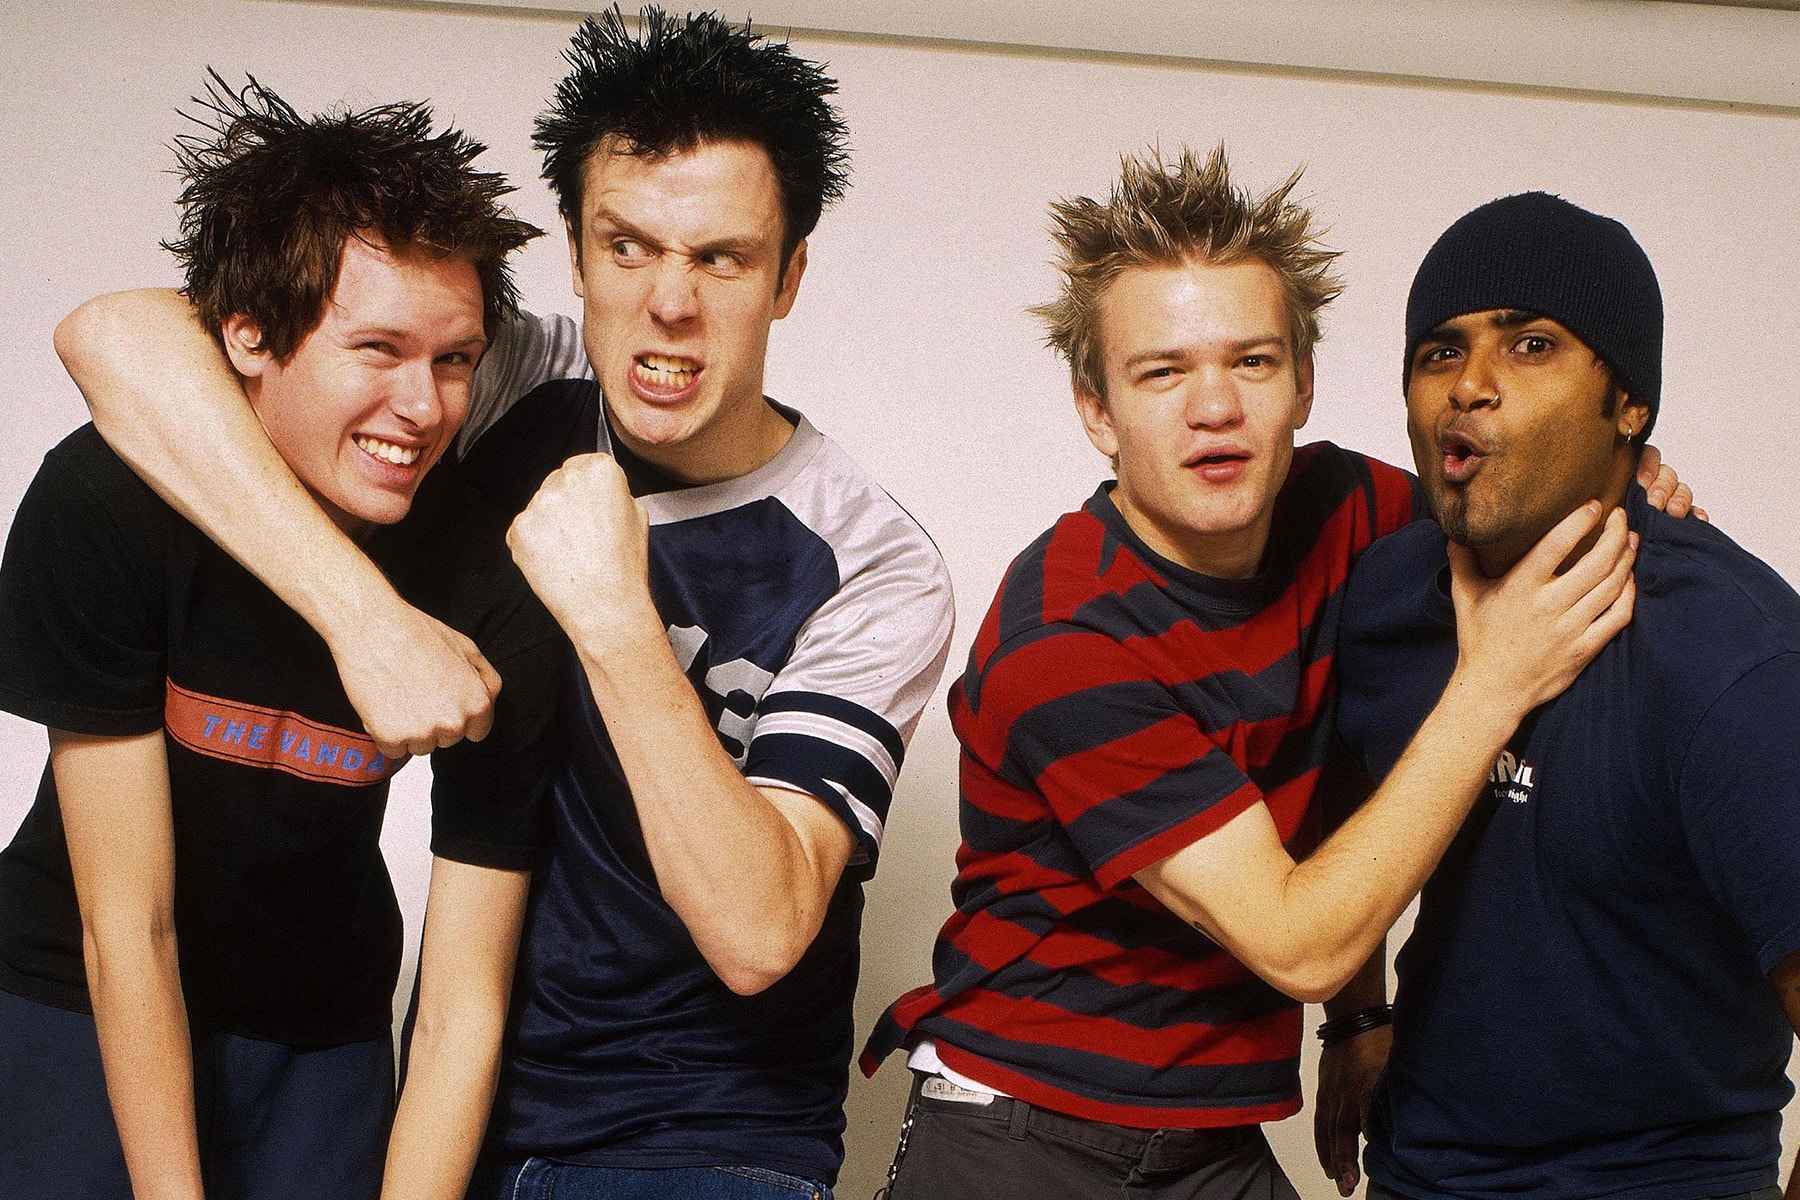 加拿大流行朋克樂團 Sum 41 宣佈即將解散